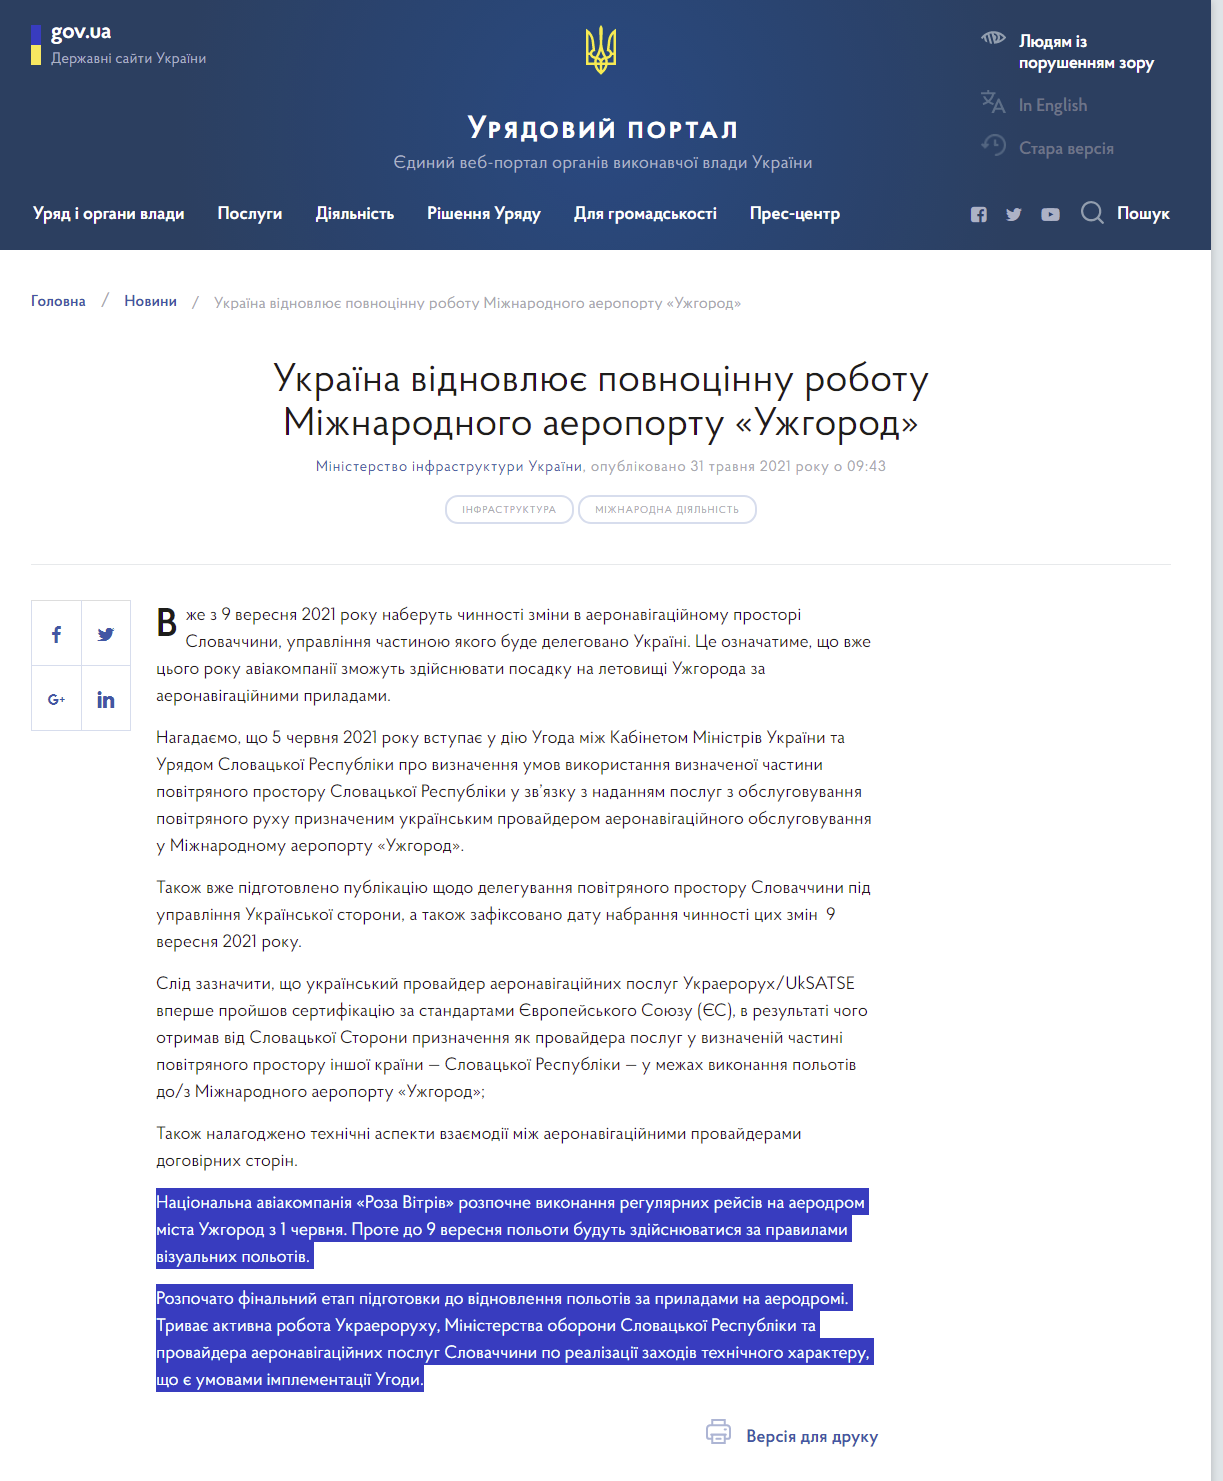 https://www.kmu.gov.ua/news/ukrayina-vidnovlyuye-povnocinnu-robotu-mizhnarodnogo-aeroportu-uzhgorod